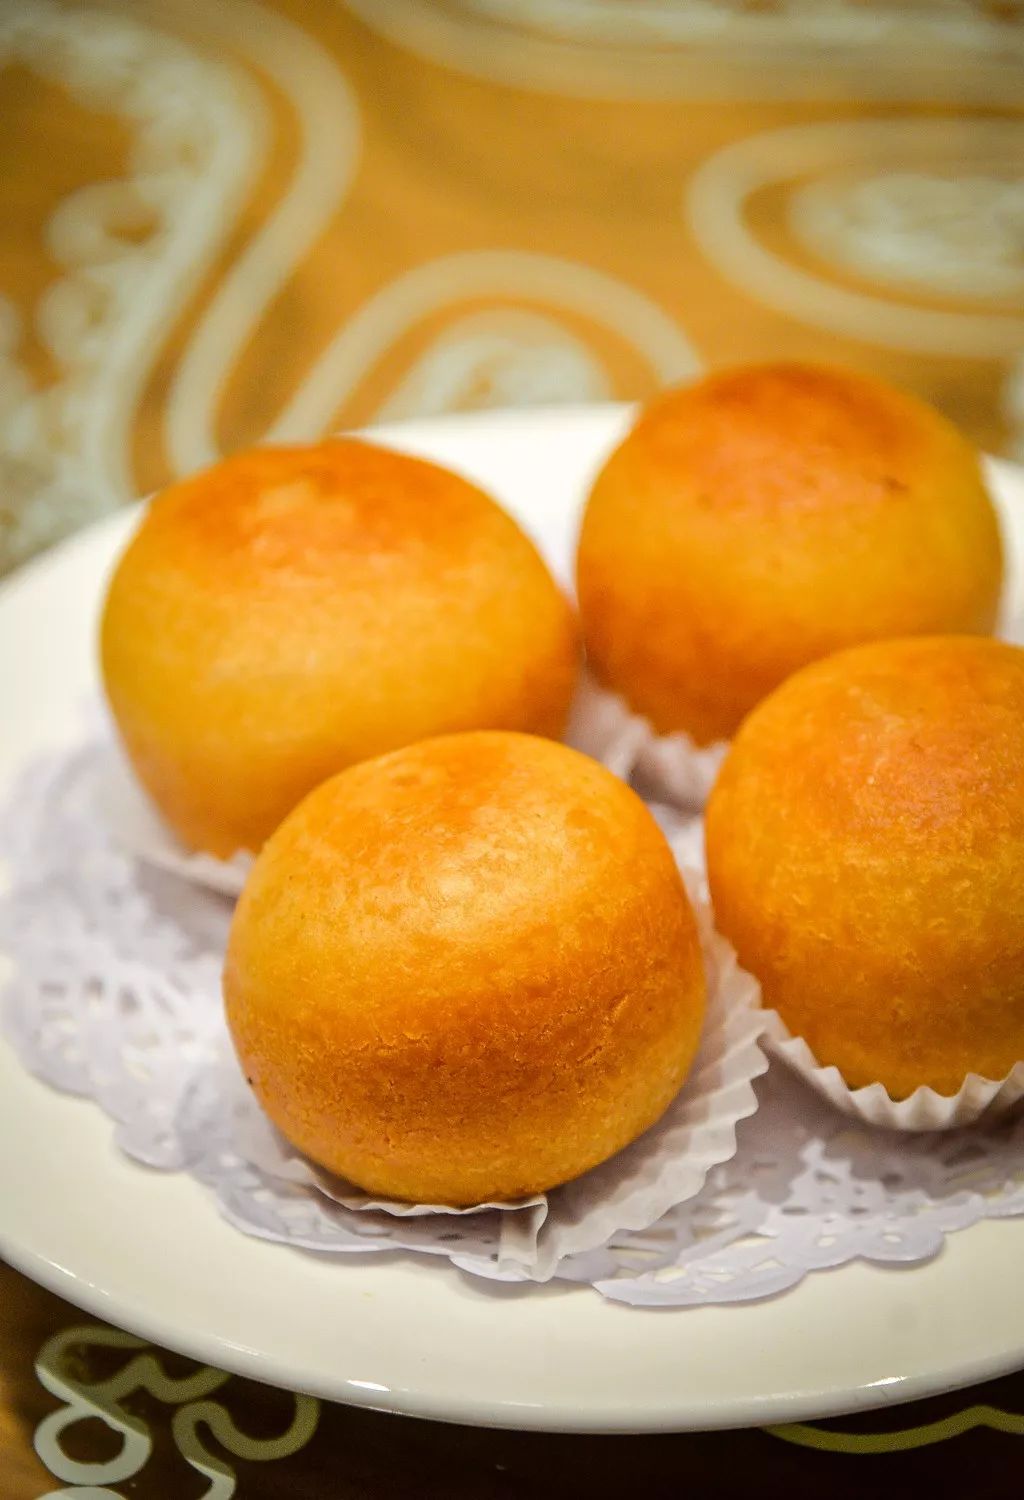 玉兰饼的名气在锡城可是家喻户晓,金黄色的外形搭配圆润饱满的身材,很